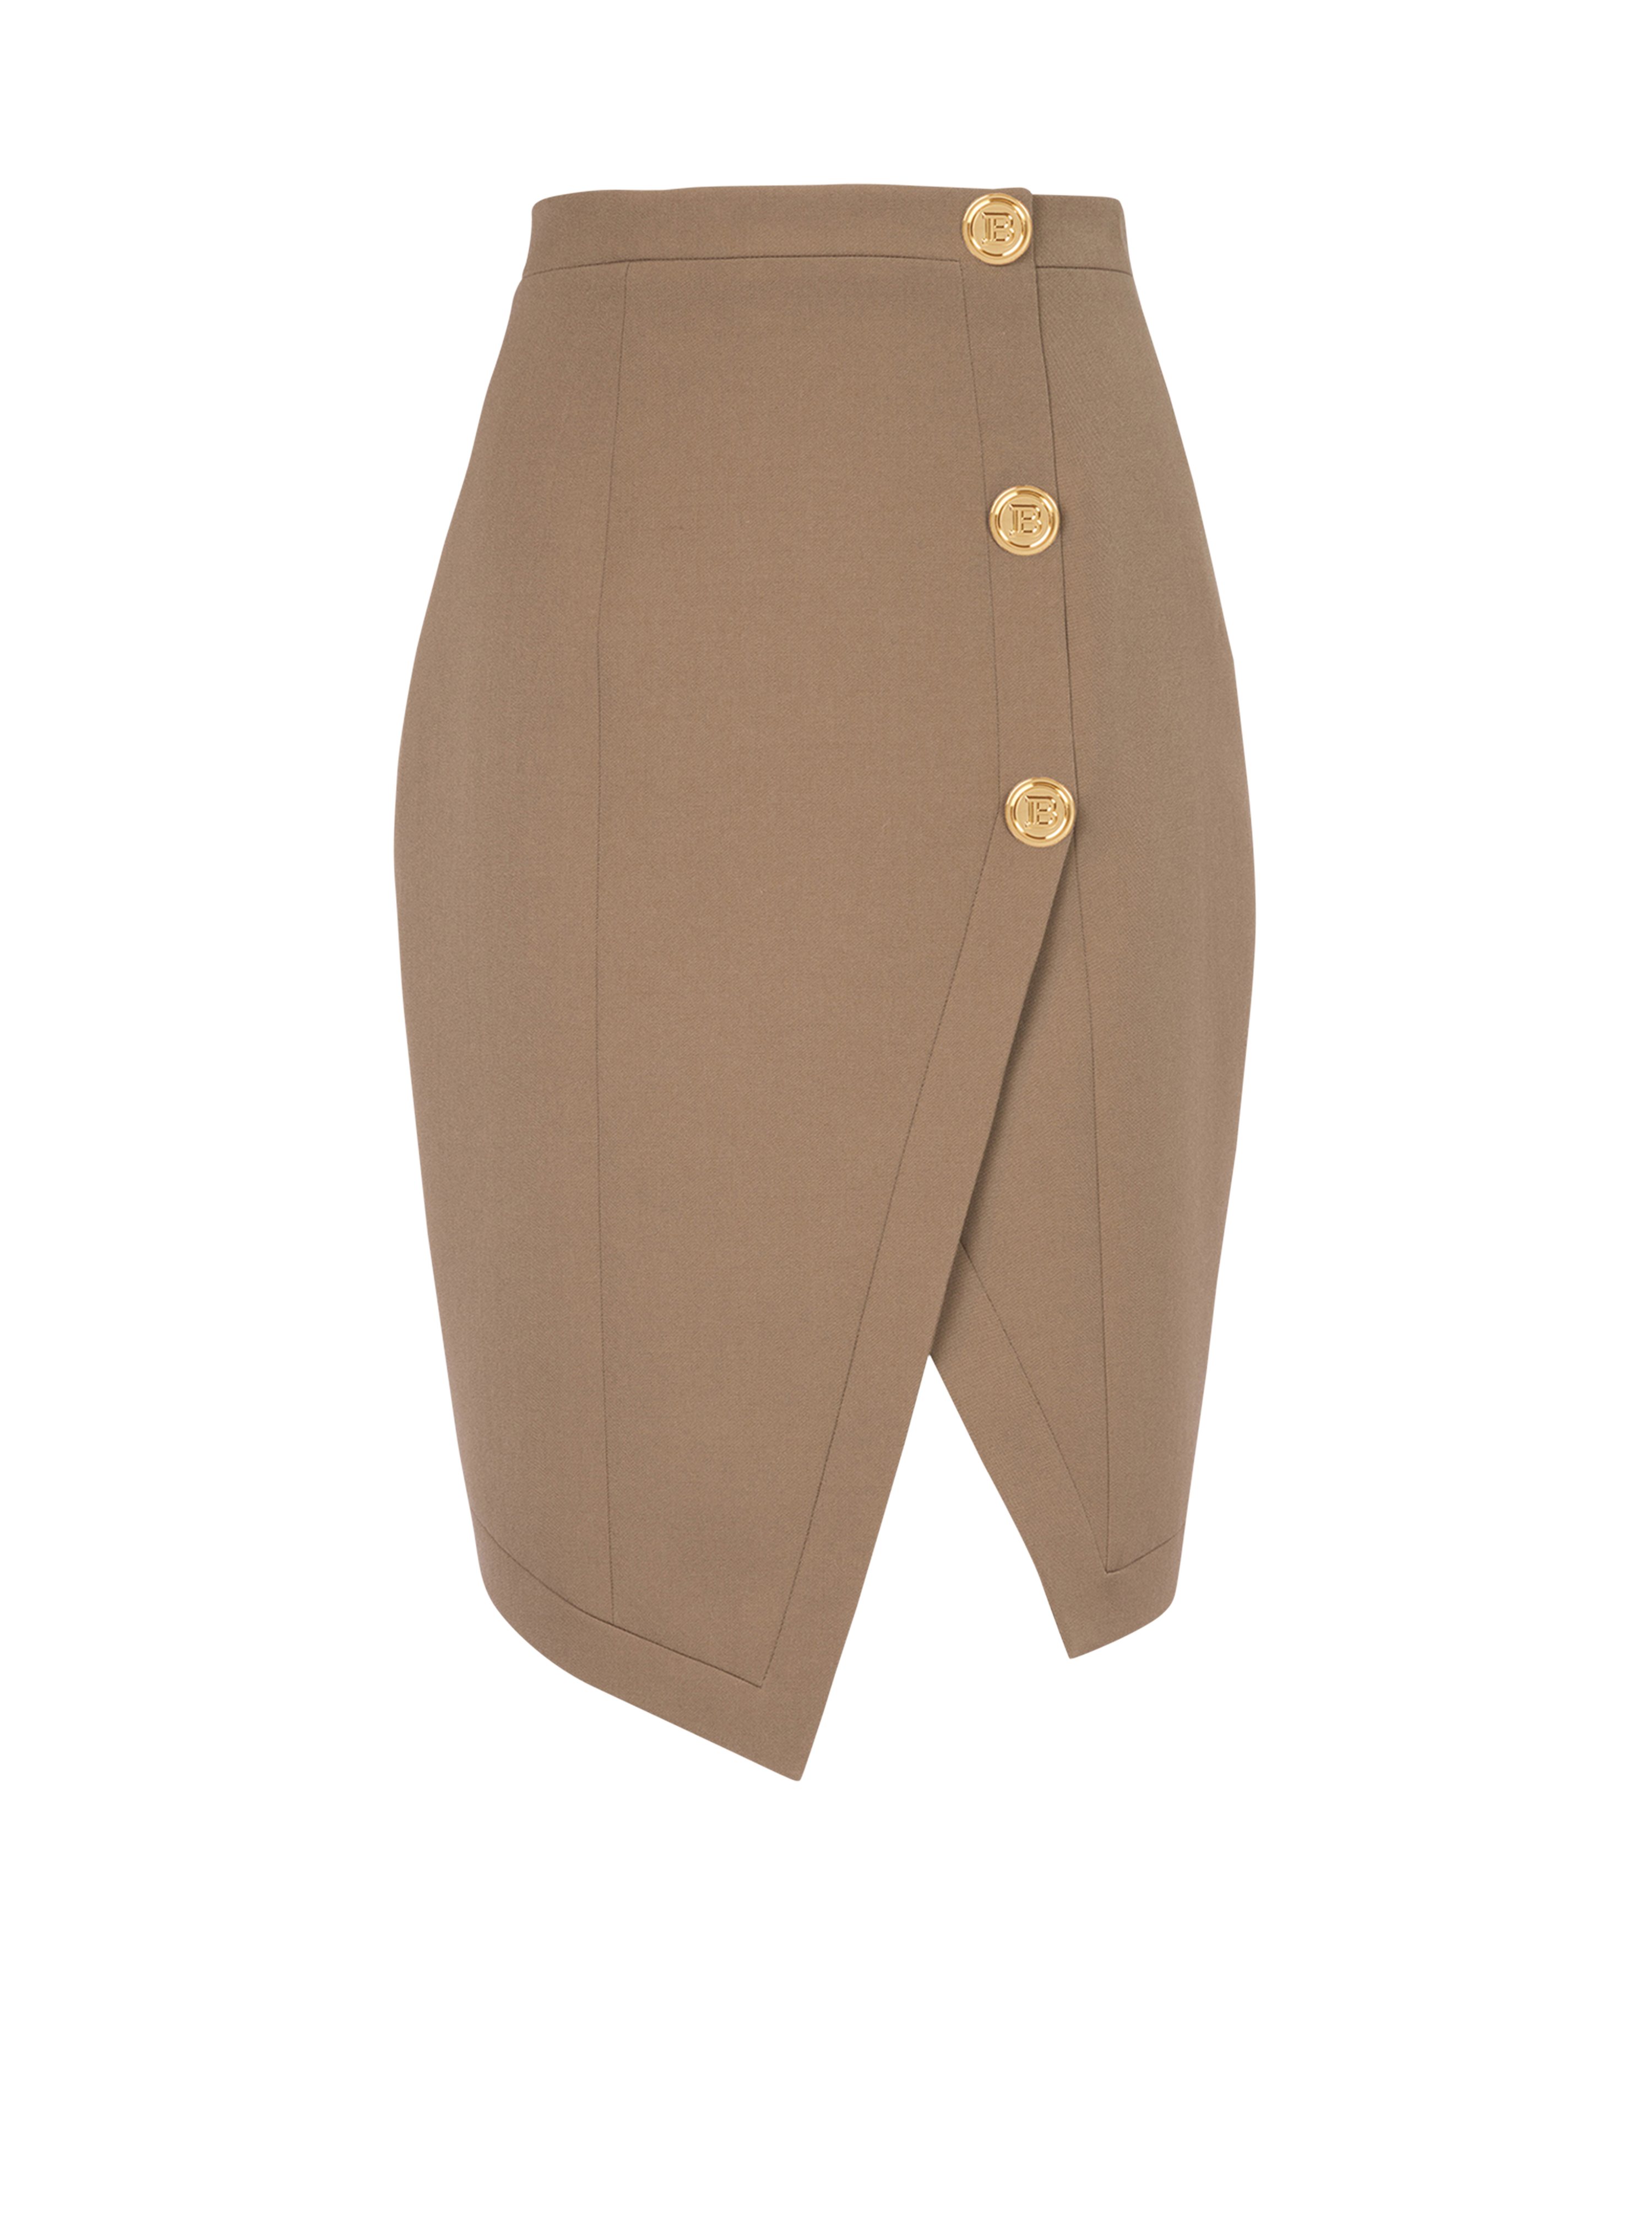 Wool skirt, brown